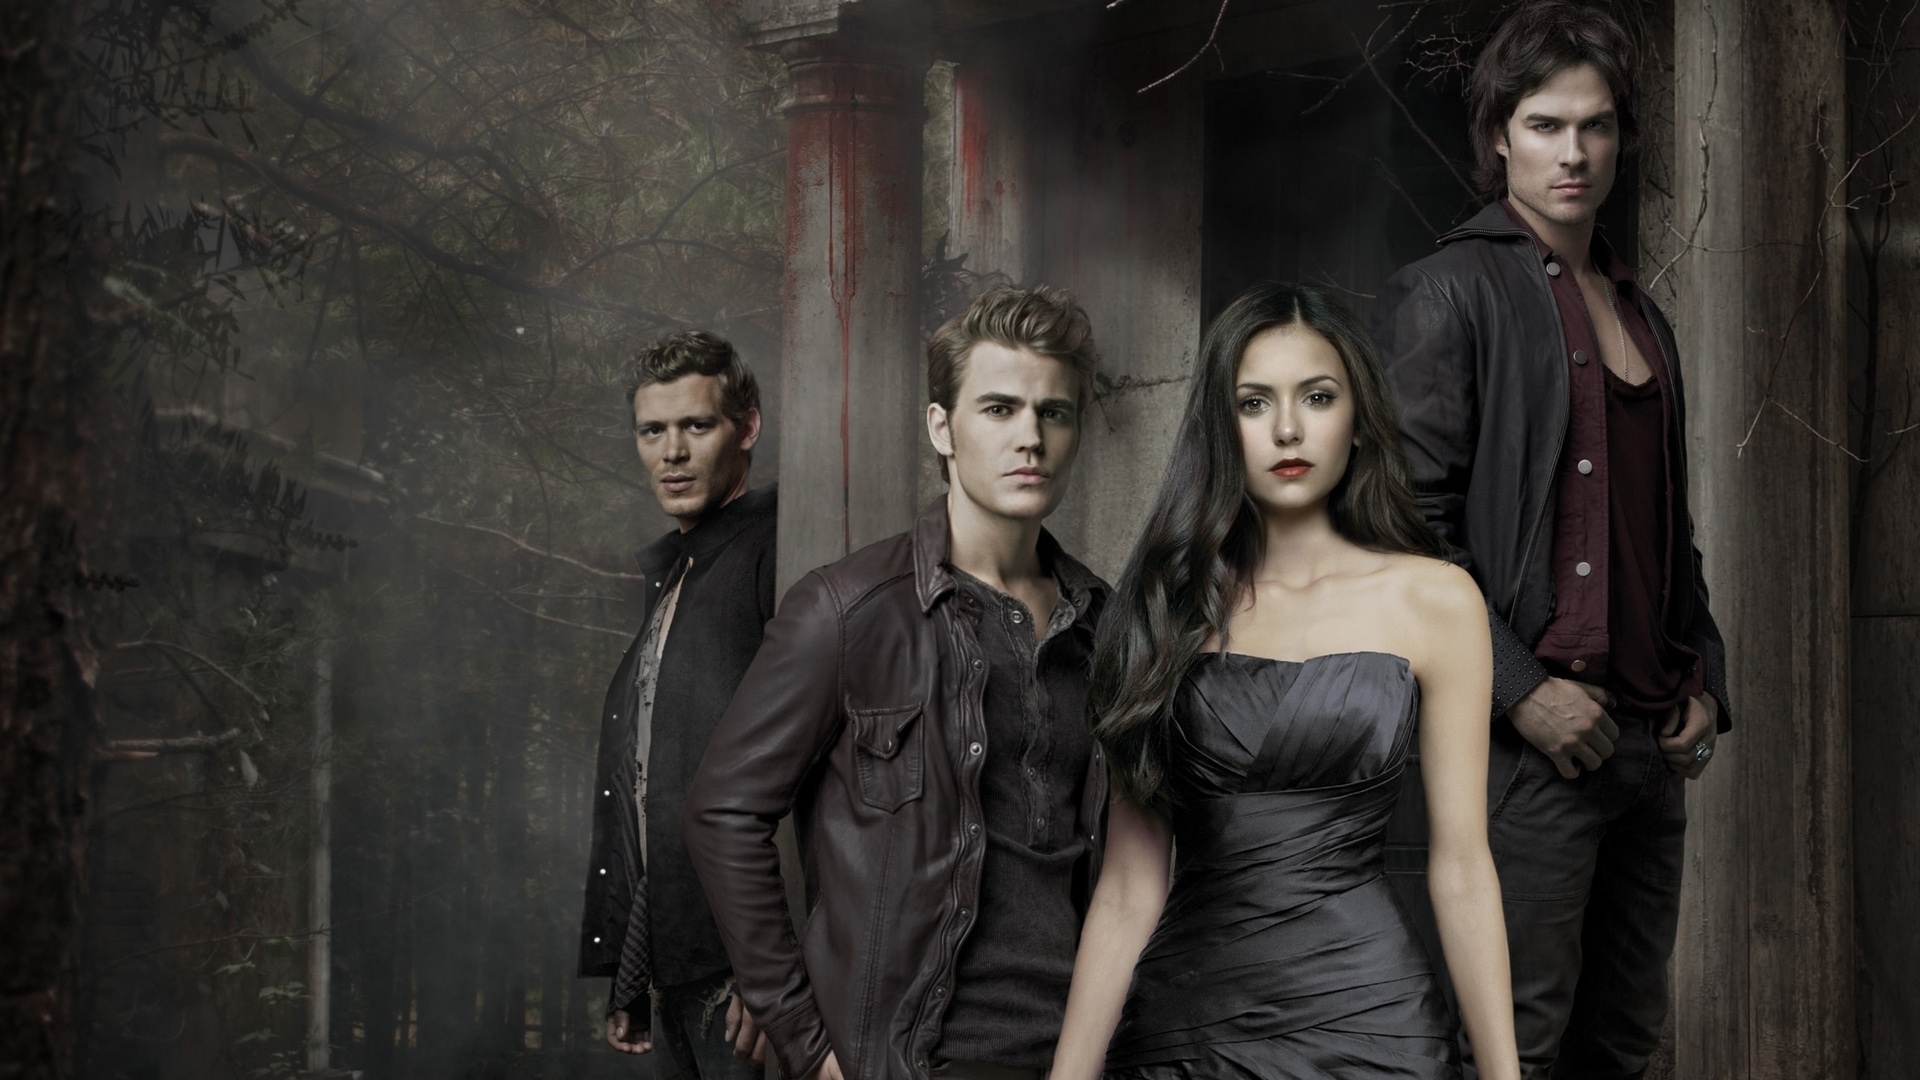 78+] Vampire Diaries Wallpaper Damon And Elena - WallpaperSafari